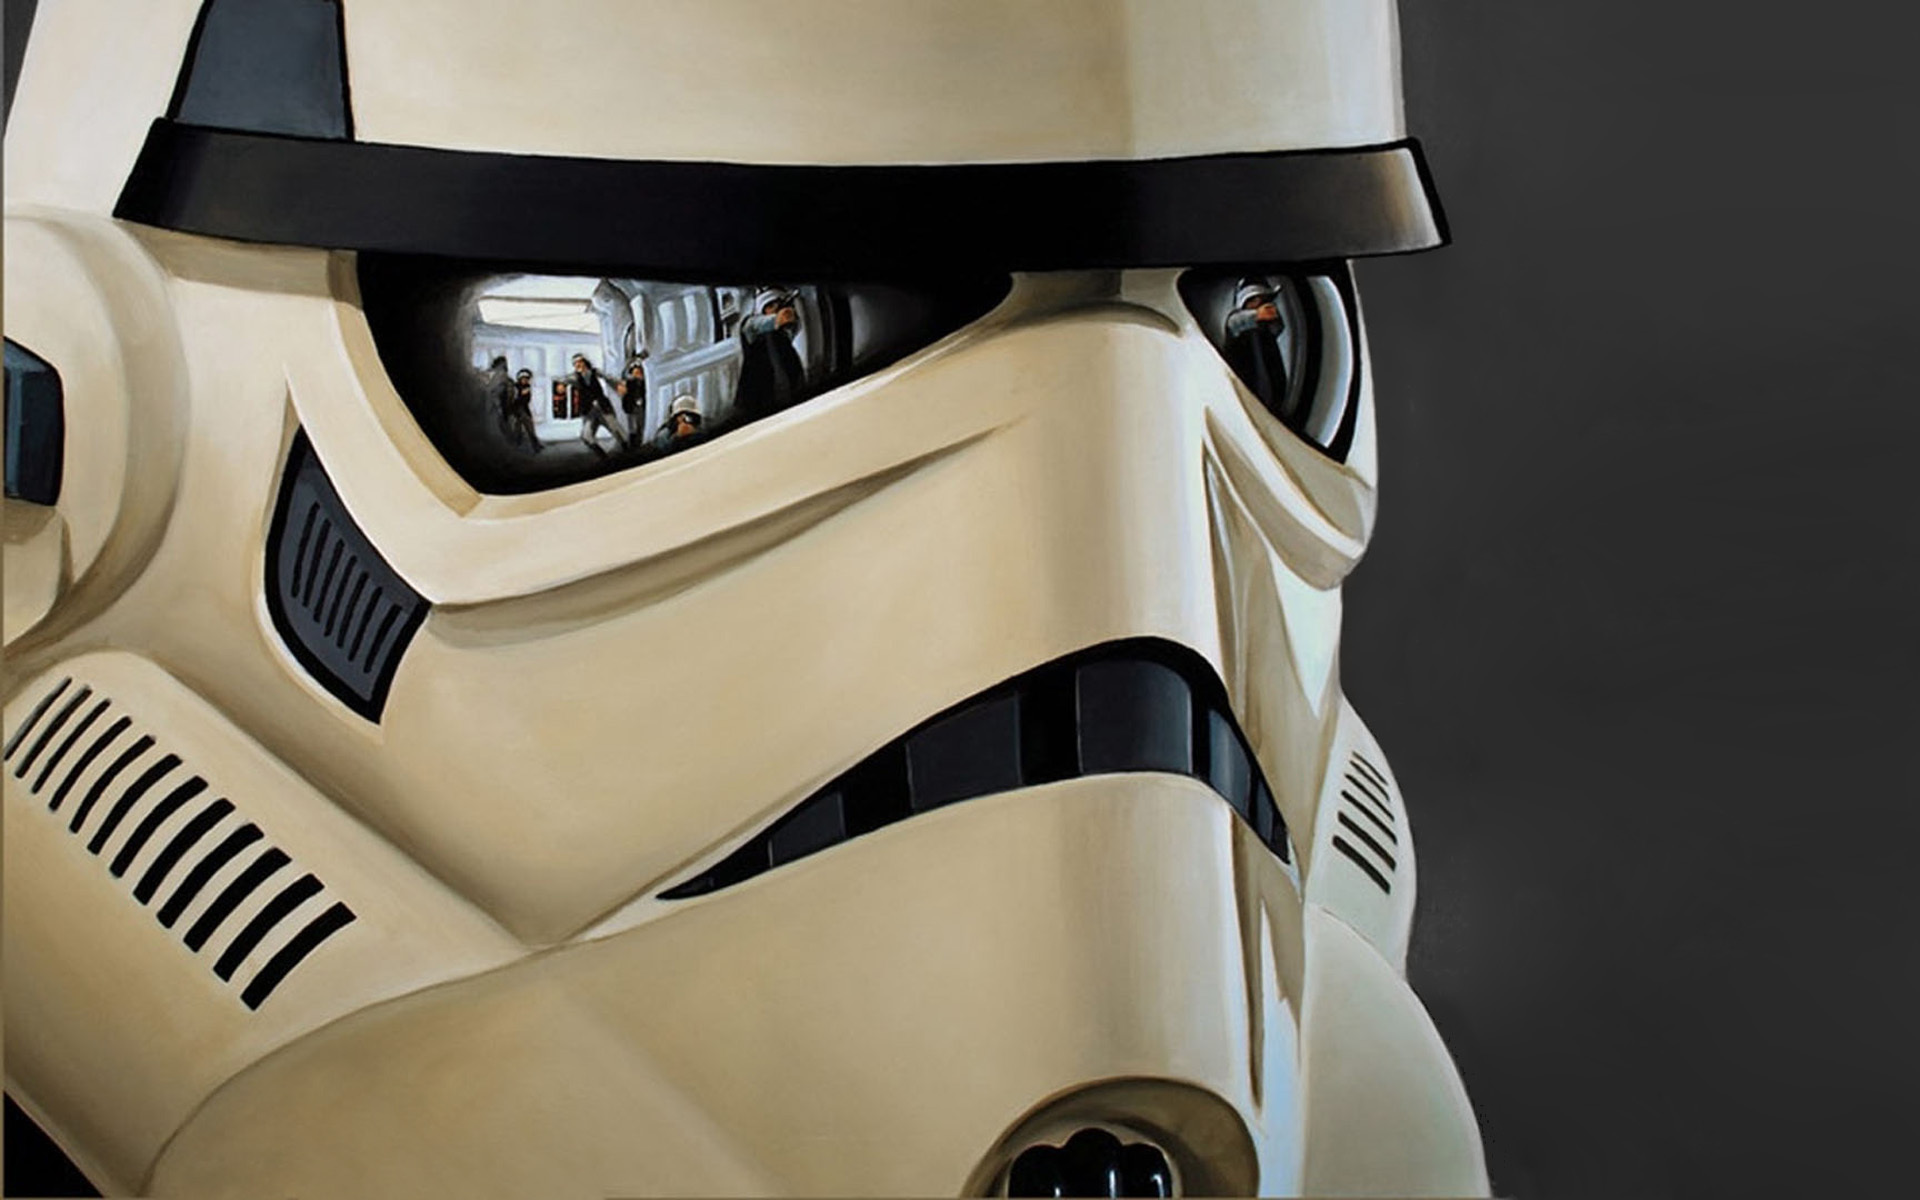 Wallpapers rebels helmet stormtrooper on the desktop